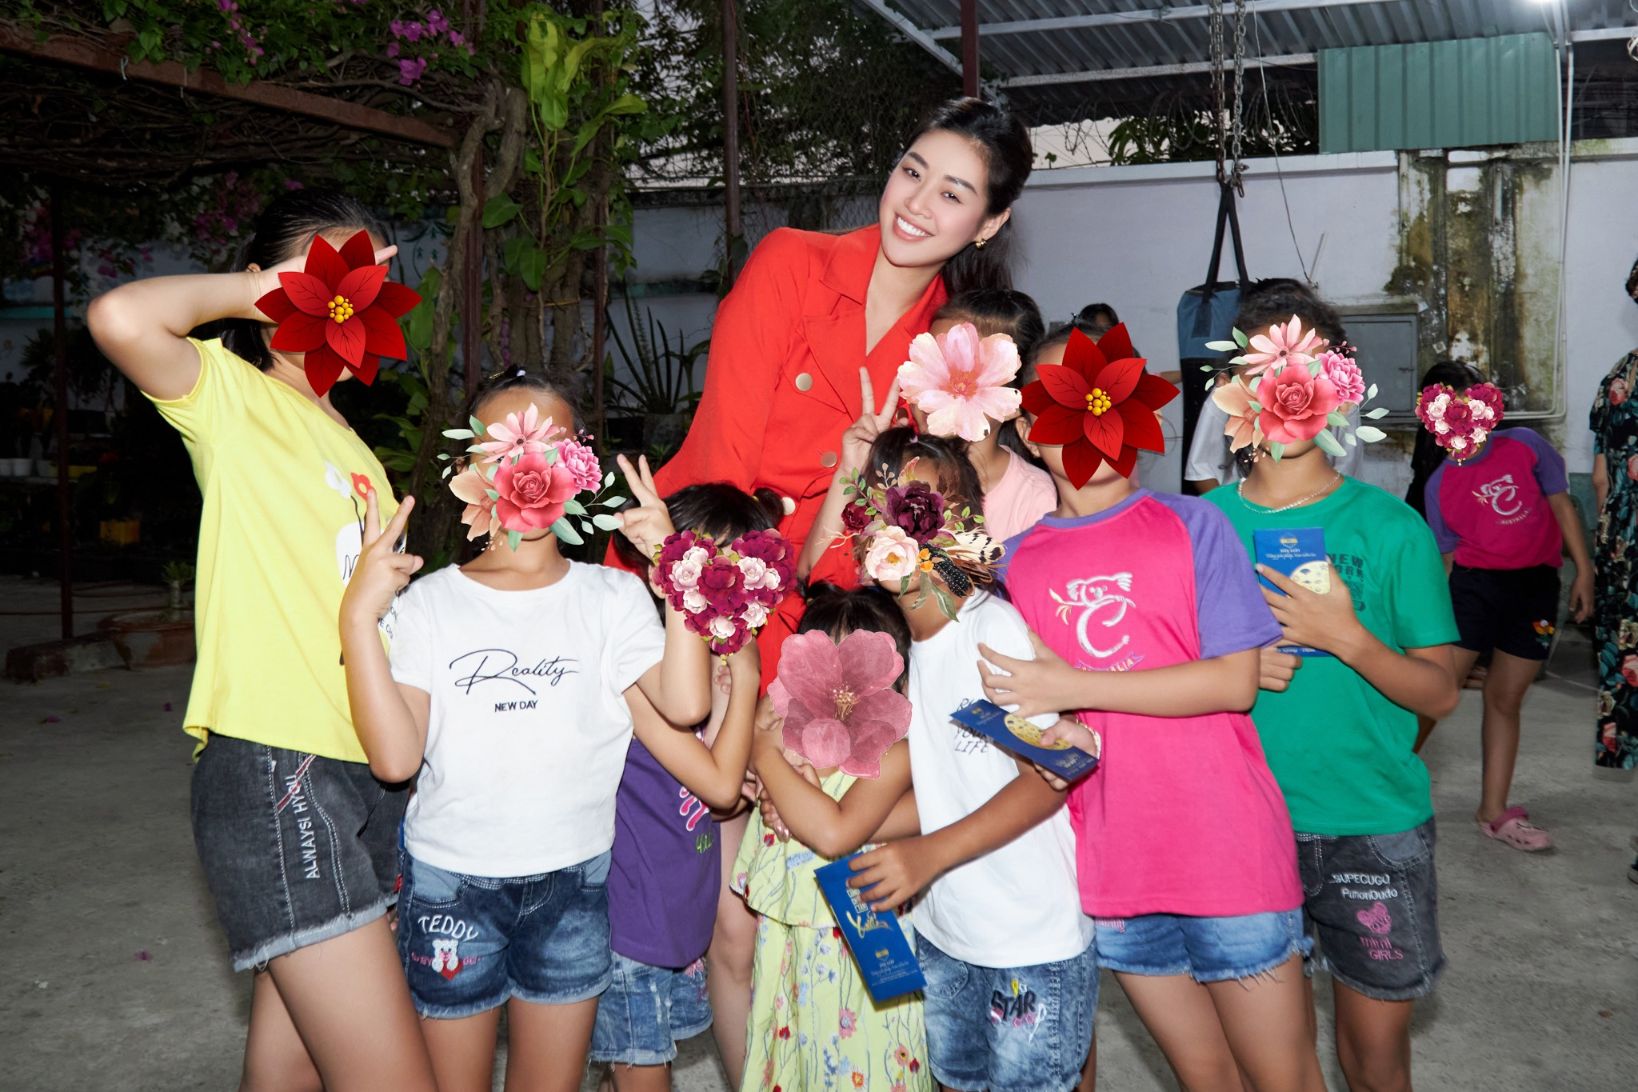 Hoa hau Khanh Van den tham ngoi nha OBV2 Hoa hậu Khánh Vân lì xì, gửi lời chúc năm mới các em ngôi nhà OBV